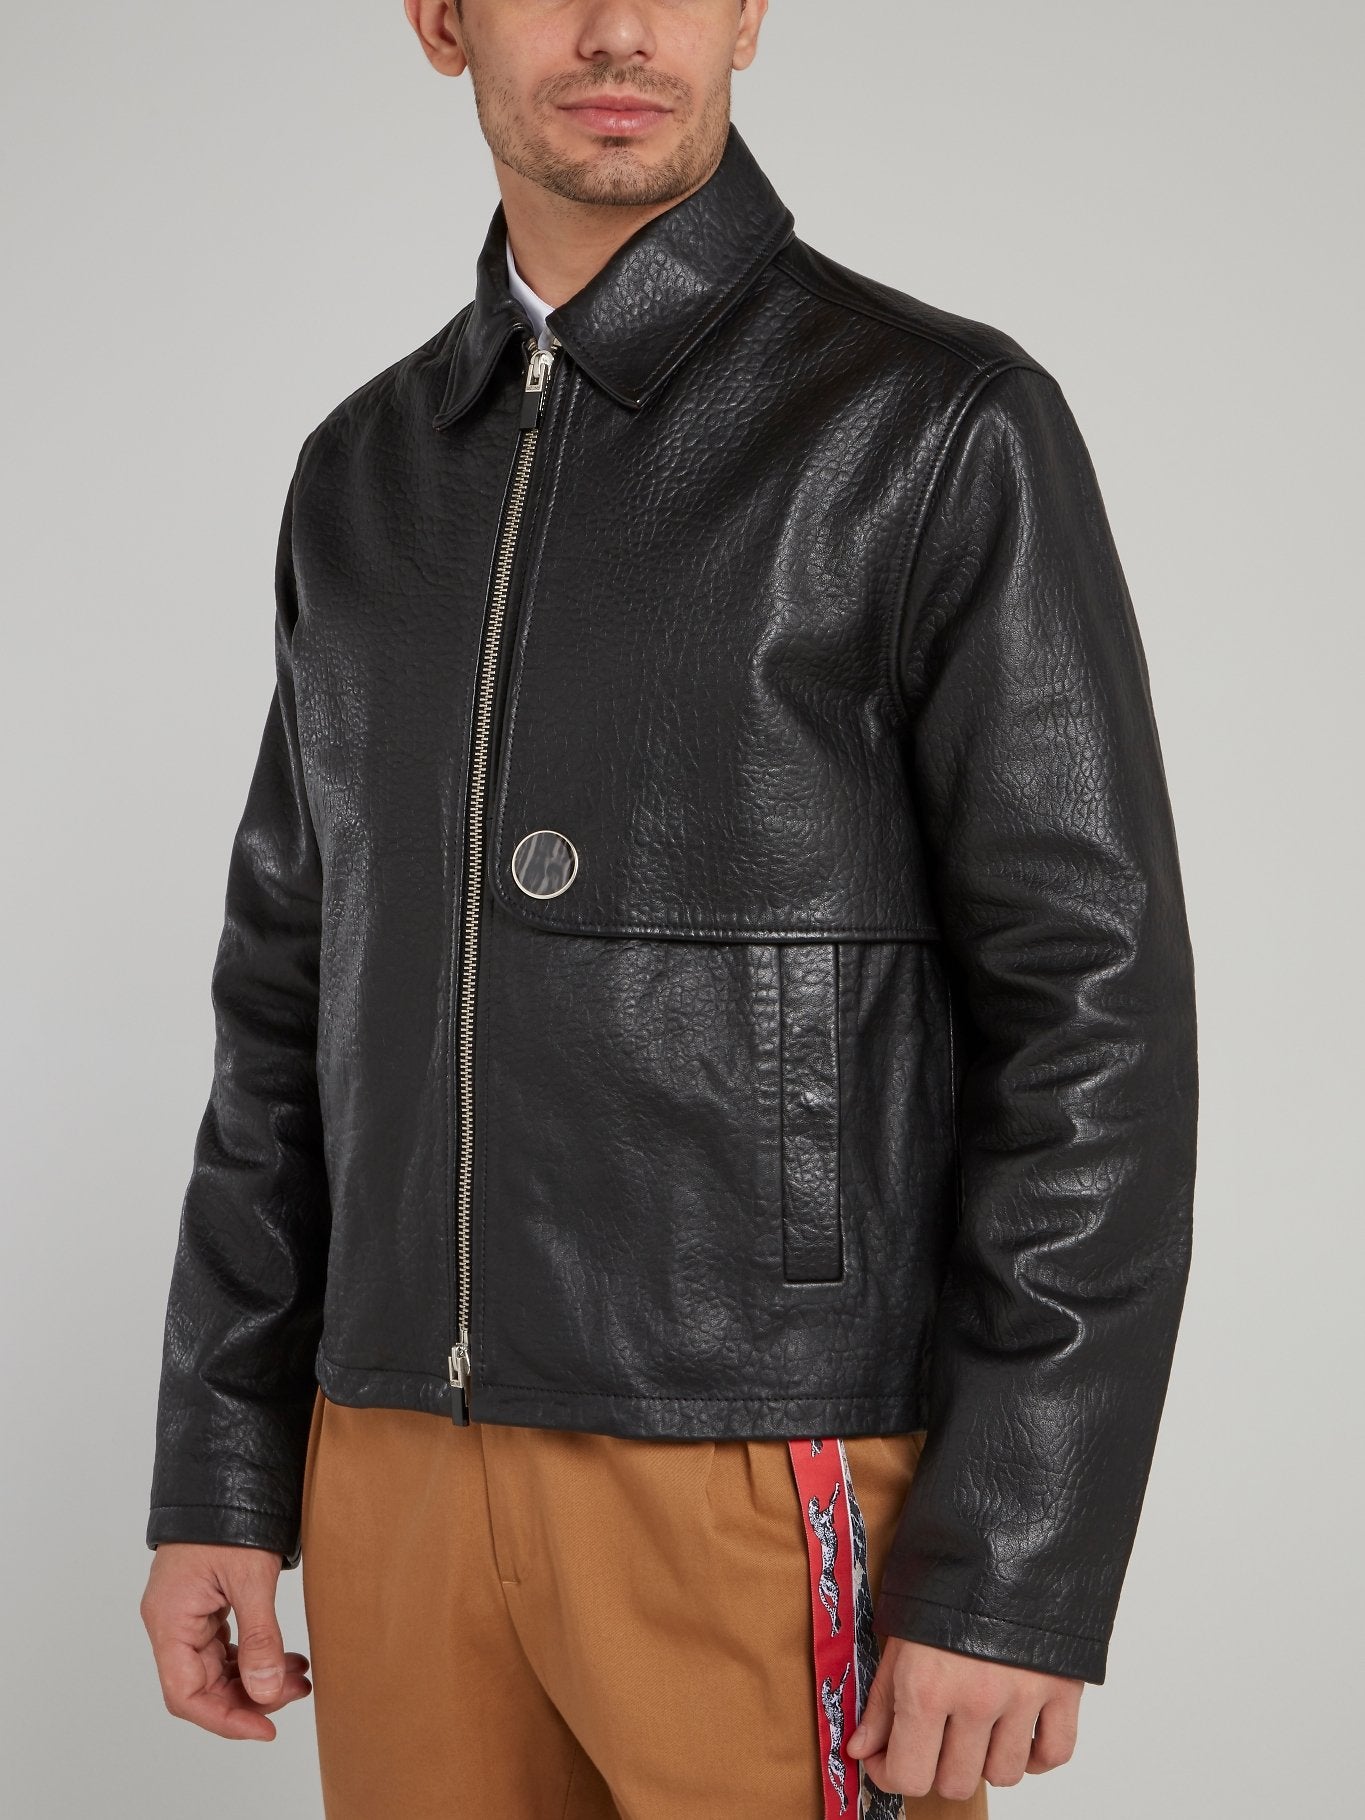 Black Zip Up Textured Leather Jacket